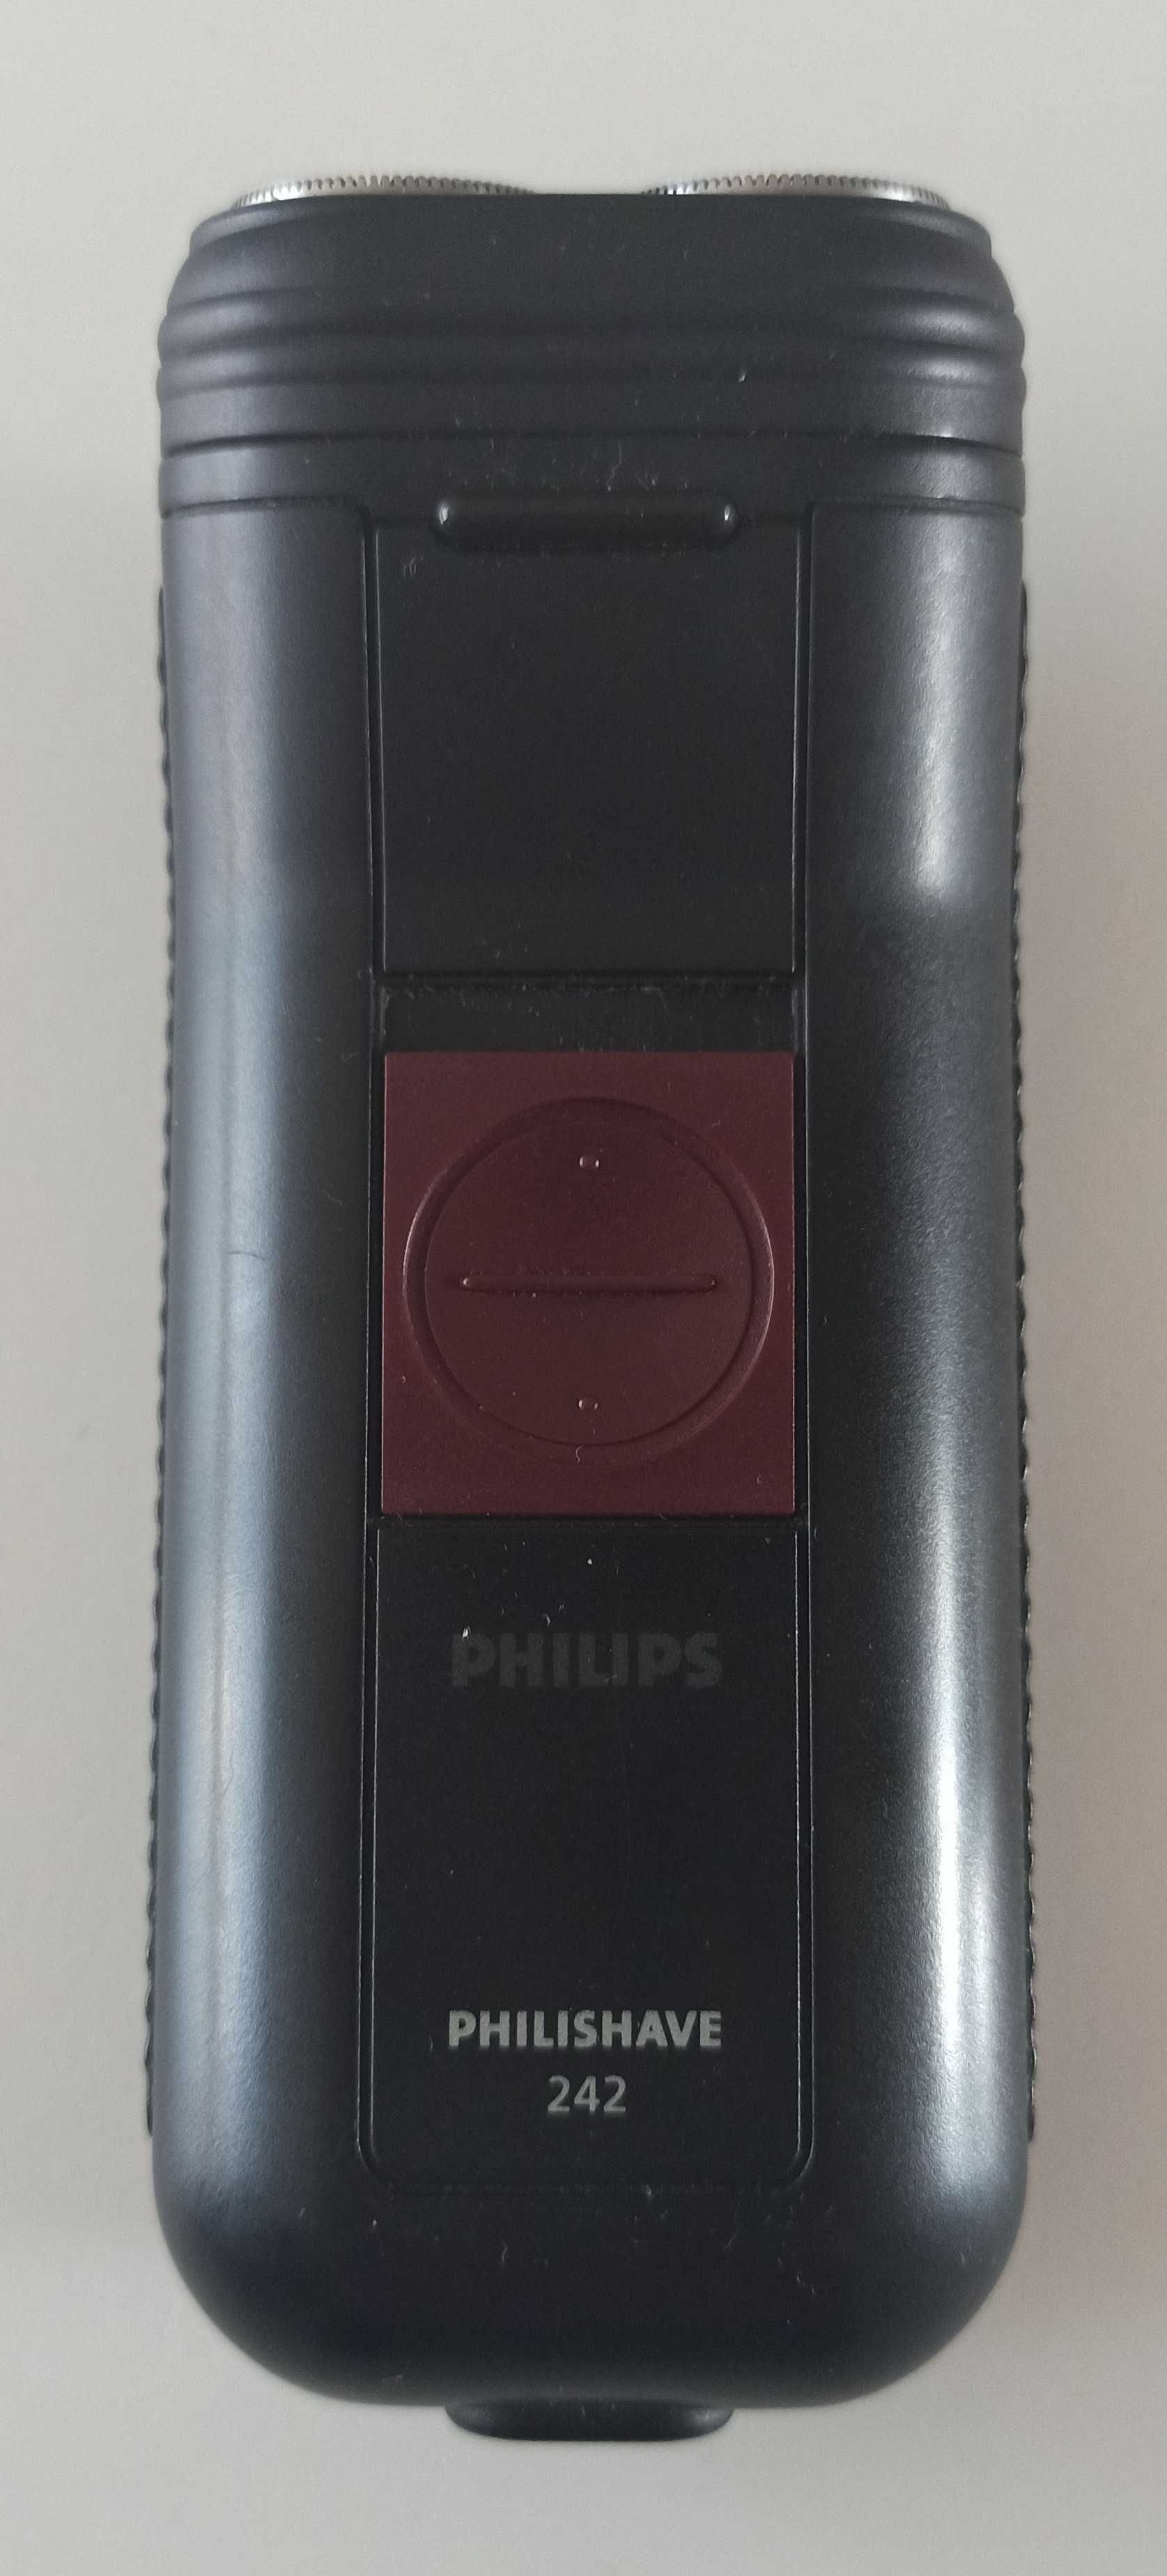 golarka Philips Philishave 242 maszynka do golenia w pokrowcu